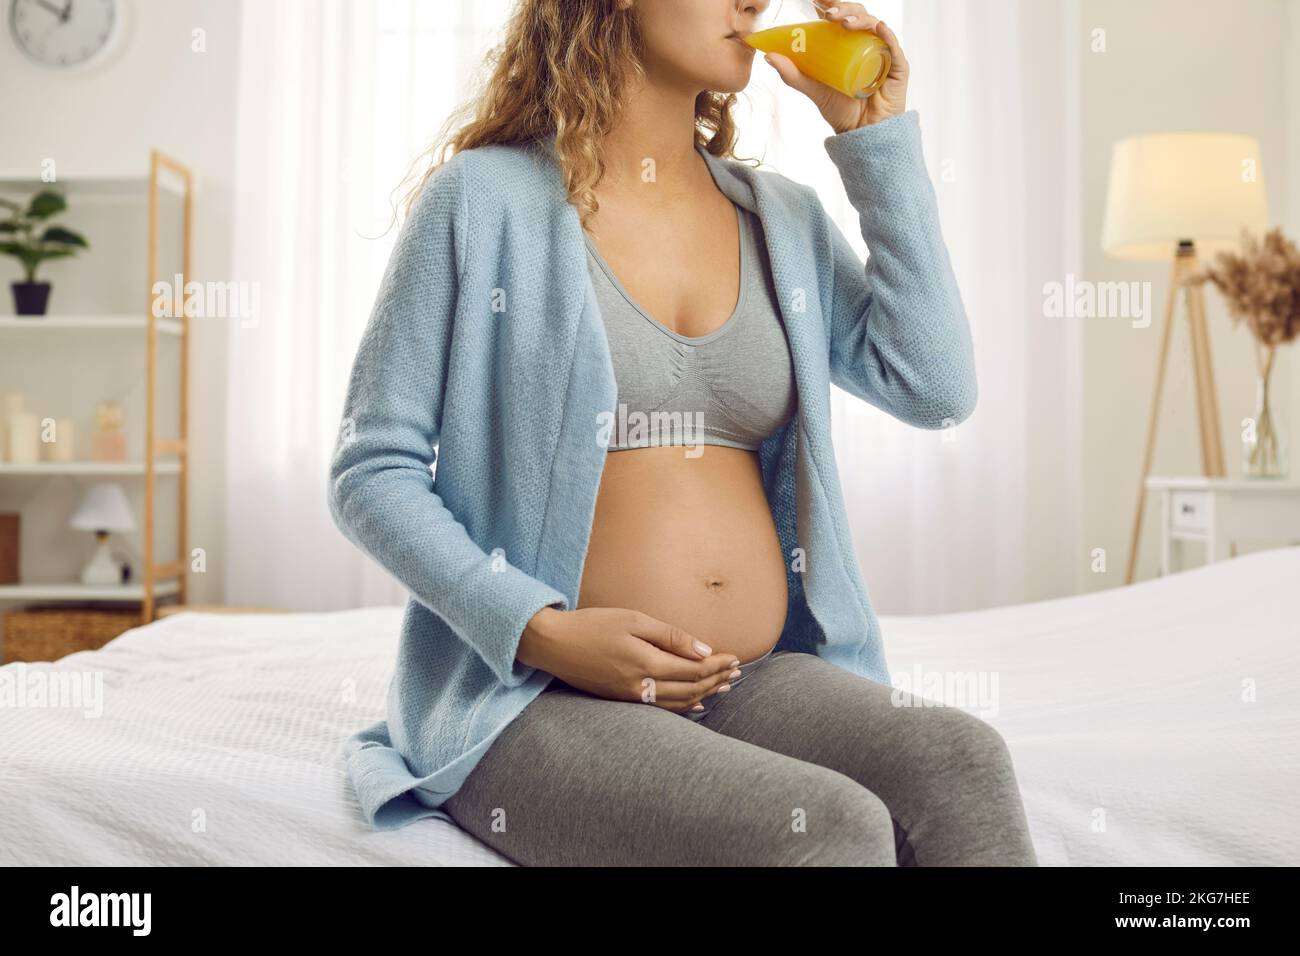 La mujer embarazada bebe jugo fresco Cuide de la nutrición Foto de stock